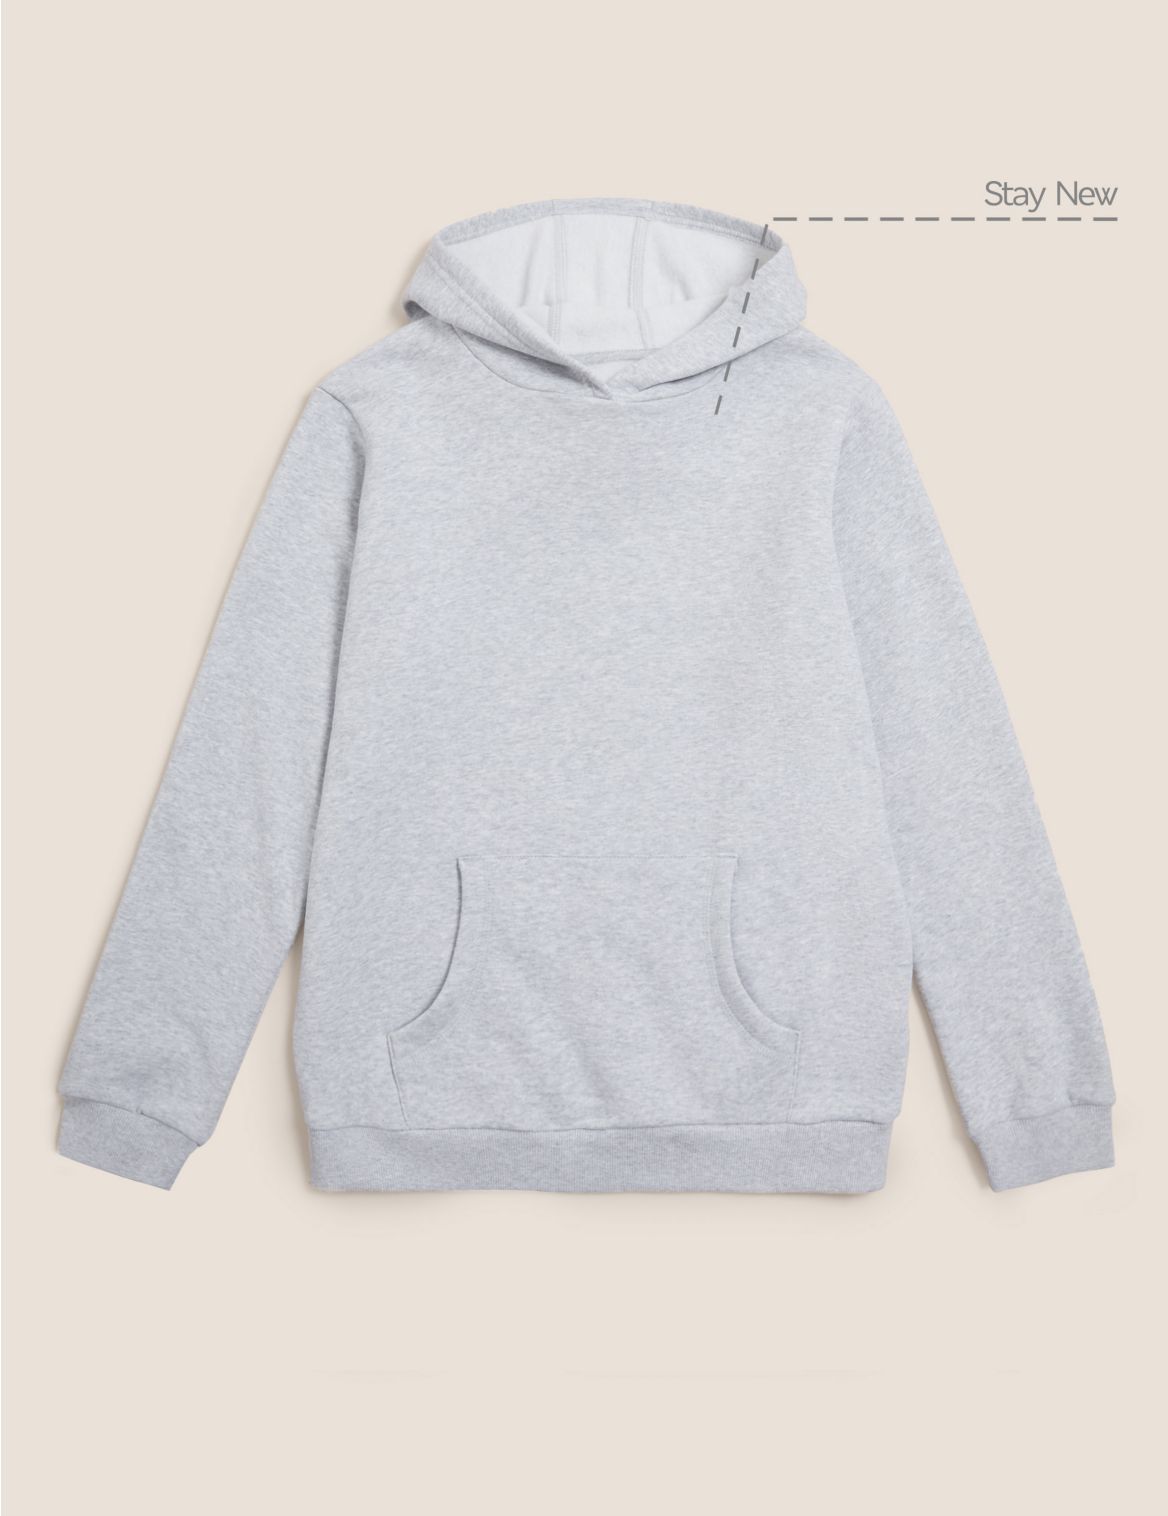 Unisex Cotton Hooded Sweatshirt grey